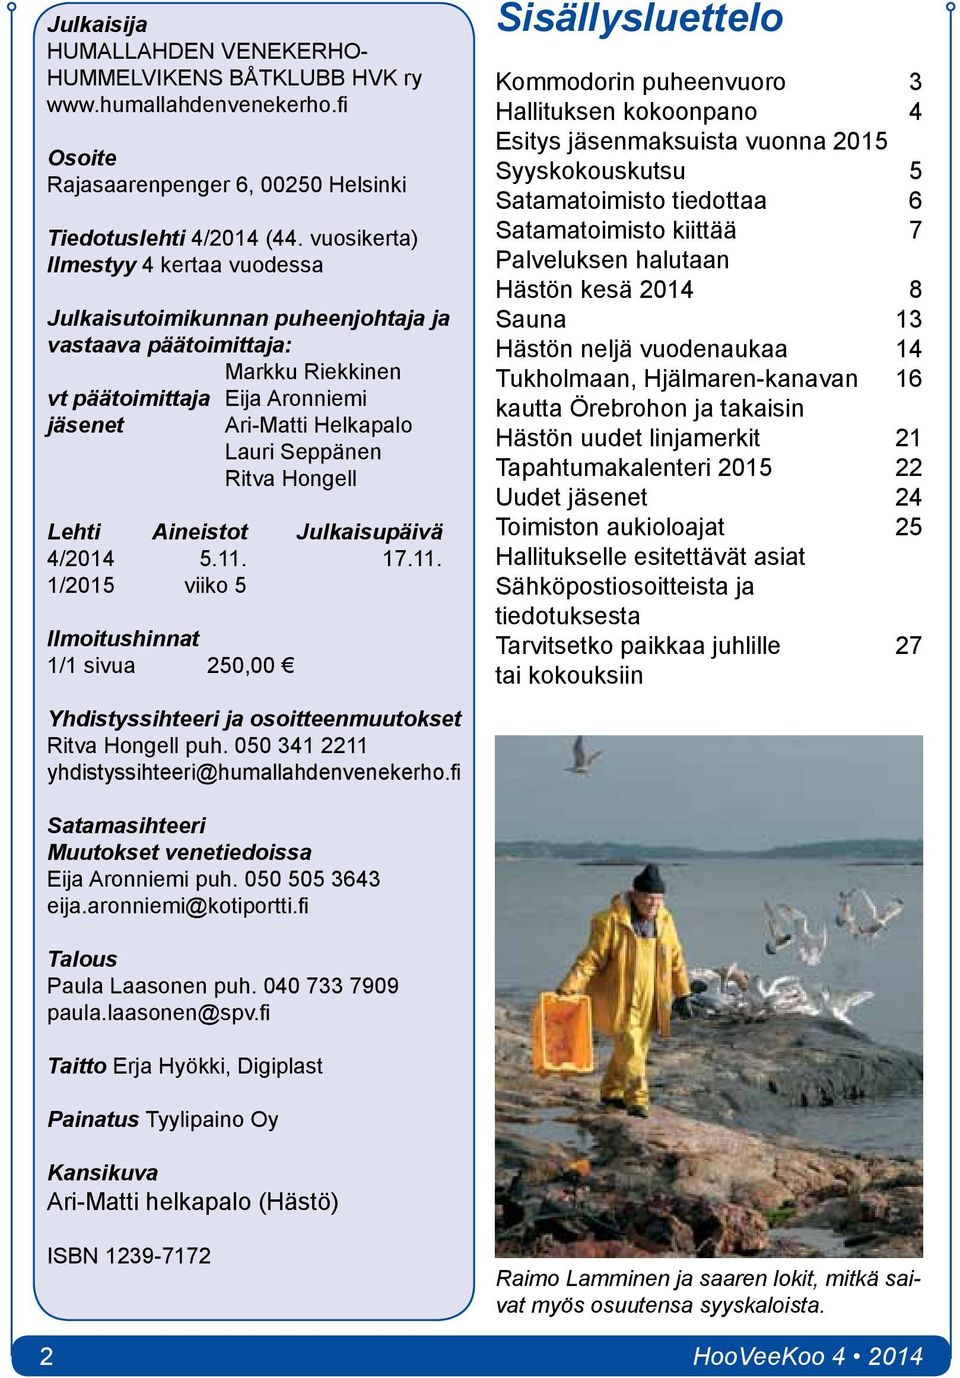 Hongell Lehti Aineistot Julkaisupäivä 4/2014 5.11. 17.11. 1/2015 viiko 5 Ilmoitushinnat 1/1 sivua 250,00 Yhdistyssihteeri ja osoitteenmuutokset Ritva Hongell puh.